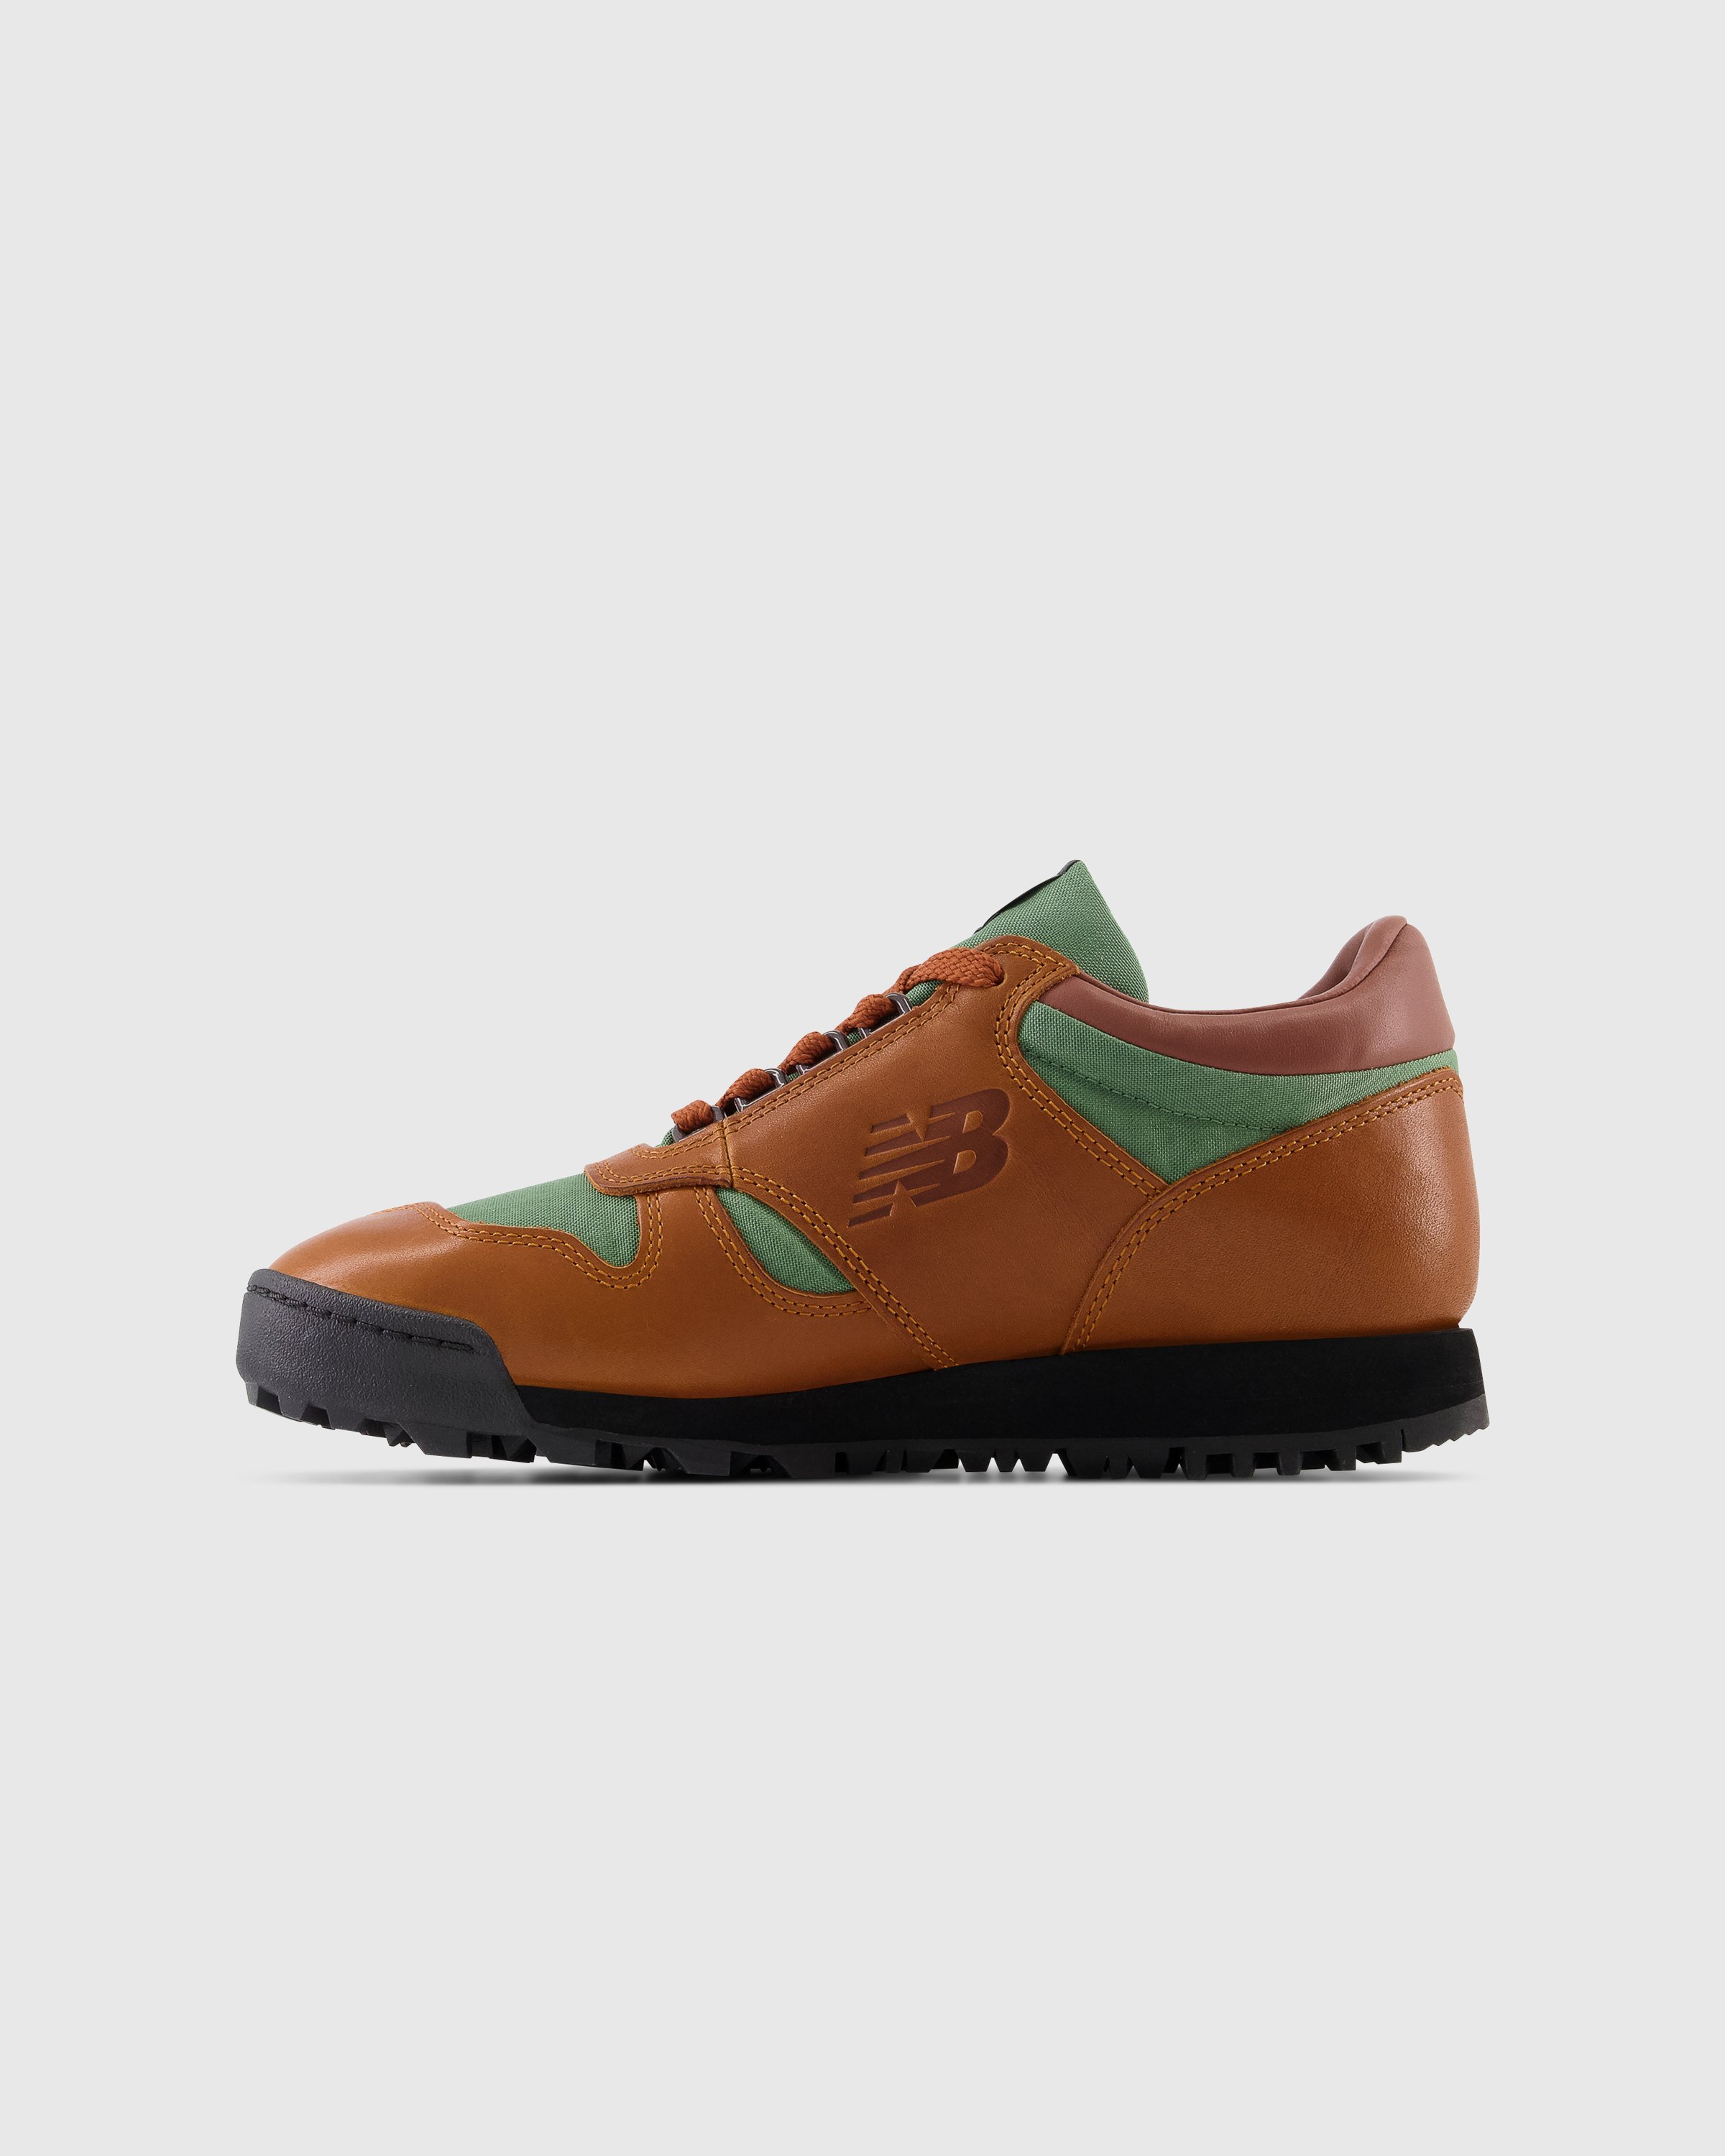 New Balance - UALGSBB Rainier Brown - Footwear - Brown - Image 2